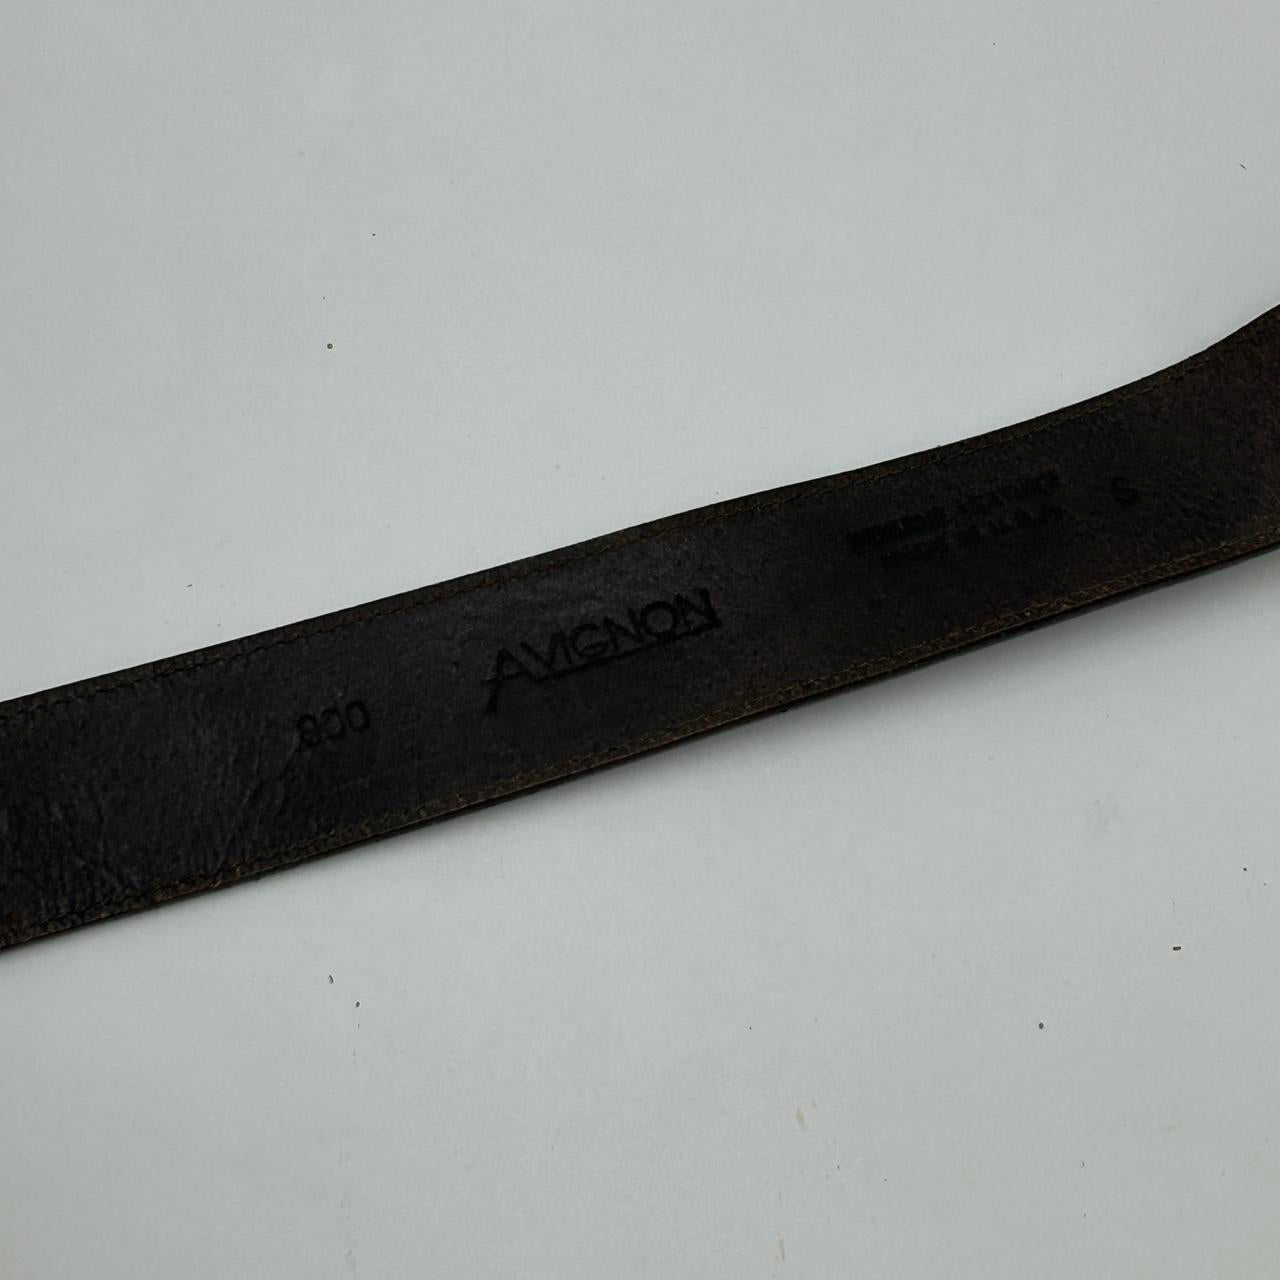 Avignon Leather Belt